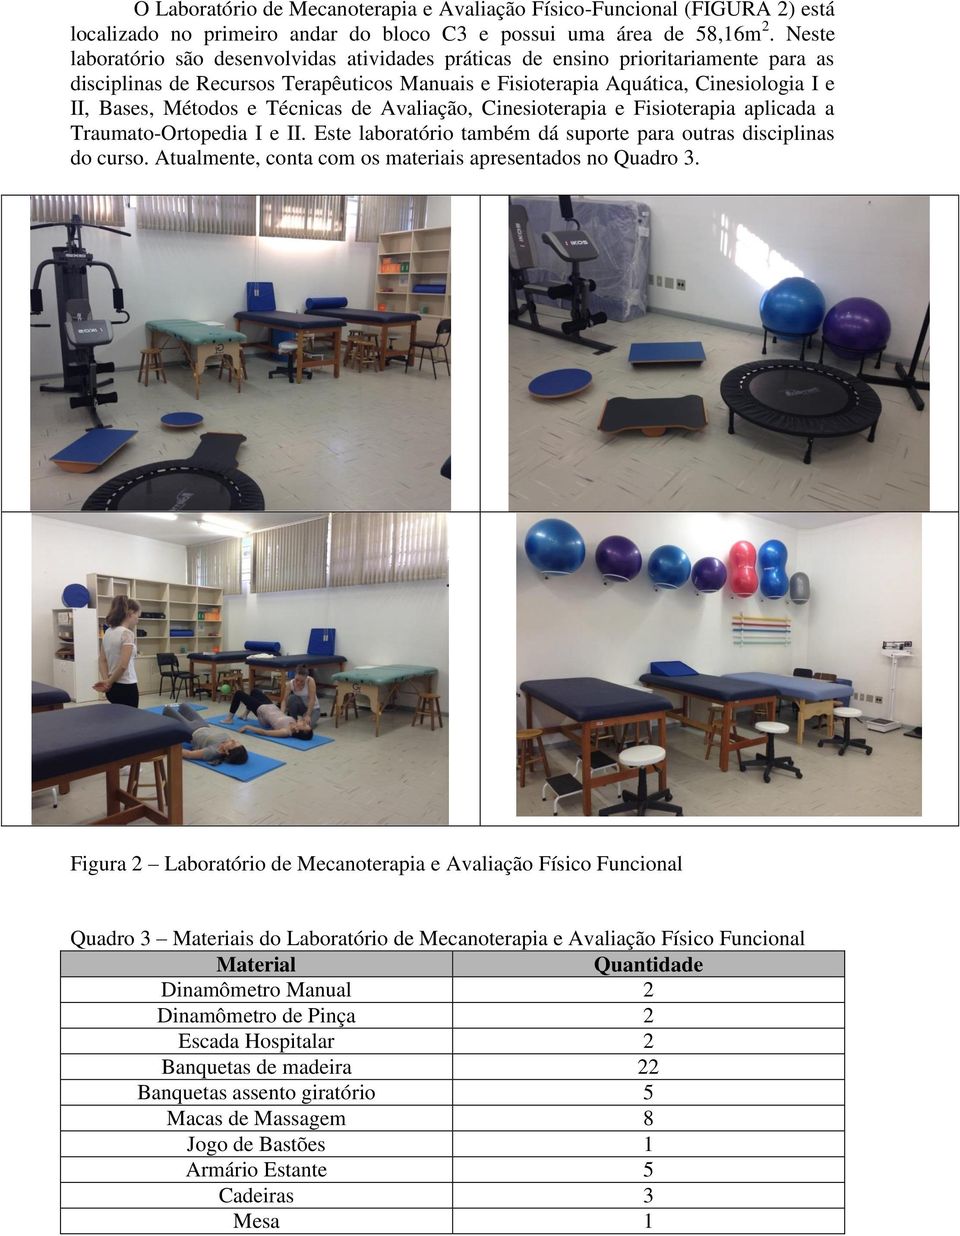 Técnicas de Avaliação, Cinesioterapia e Fisioterapia aplicada a Traumato-Ortopedia I e II. Este laboratório também dá suporte para outras disciplinas do curso.